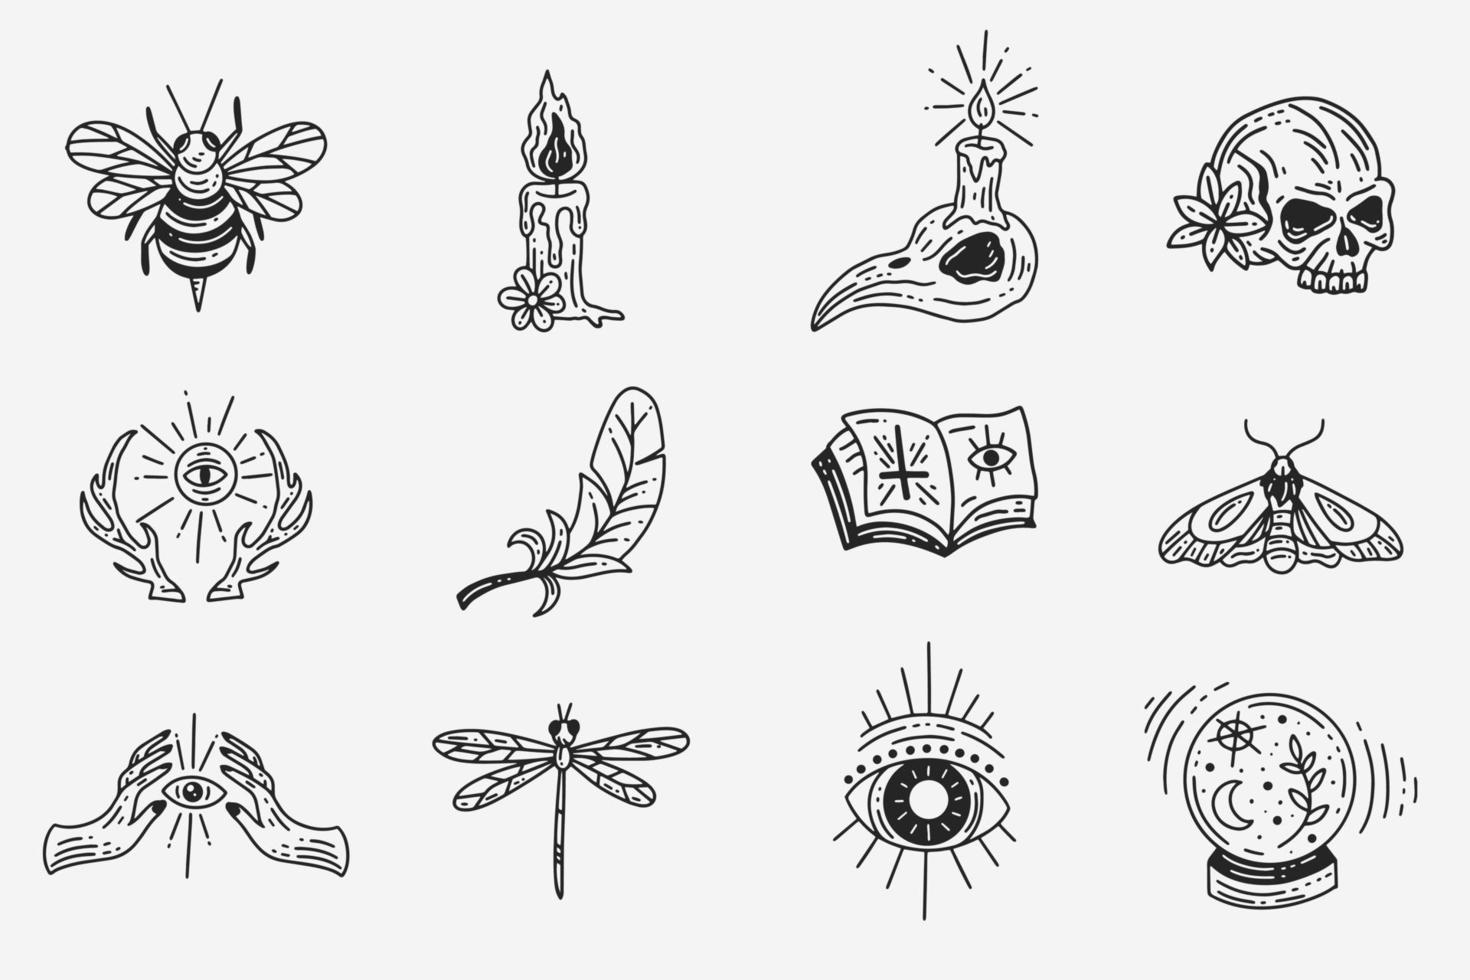 ensemble collection mystique céleste sombre saint simple minimalisme tatouage clipart symbole espace griffonnage ésotérique éléments vintage illustration vecteur